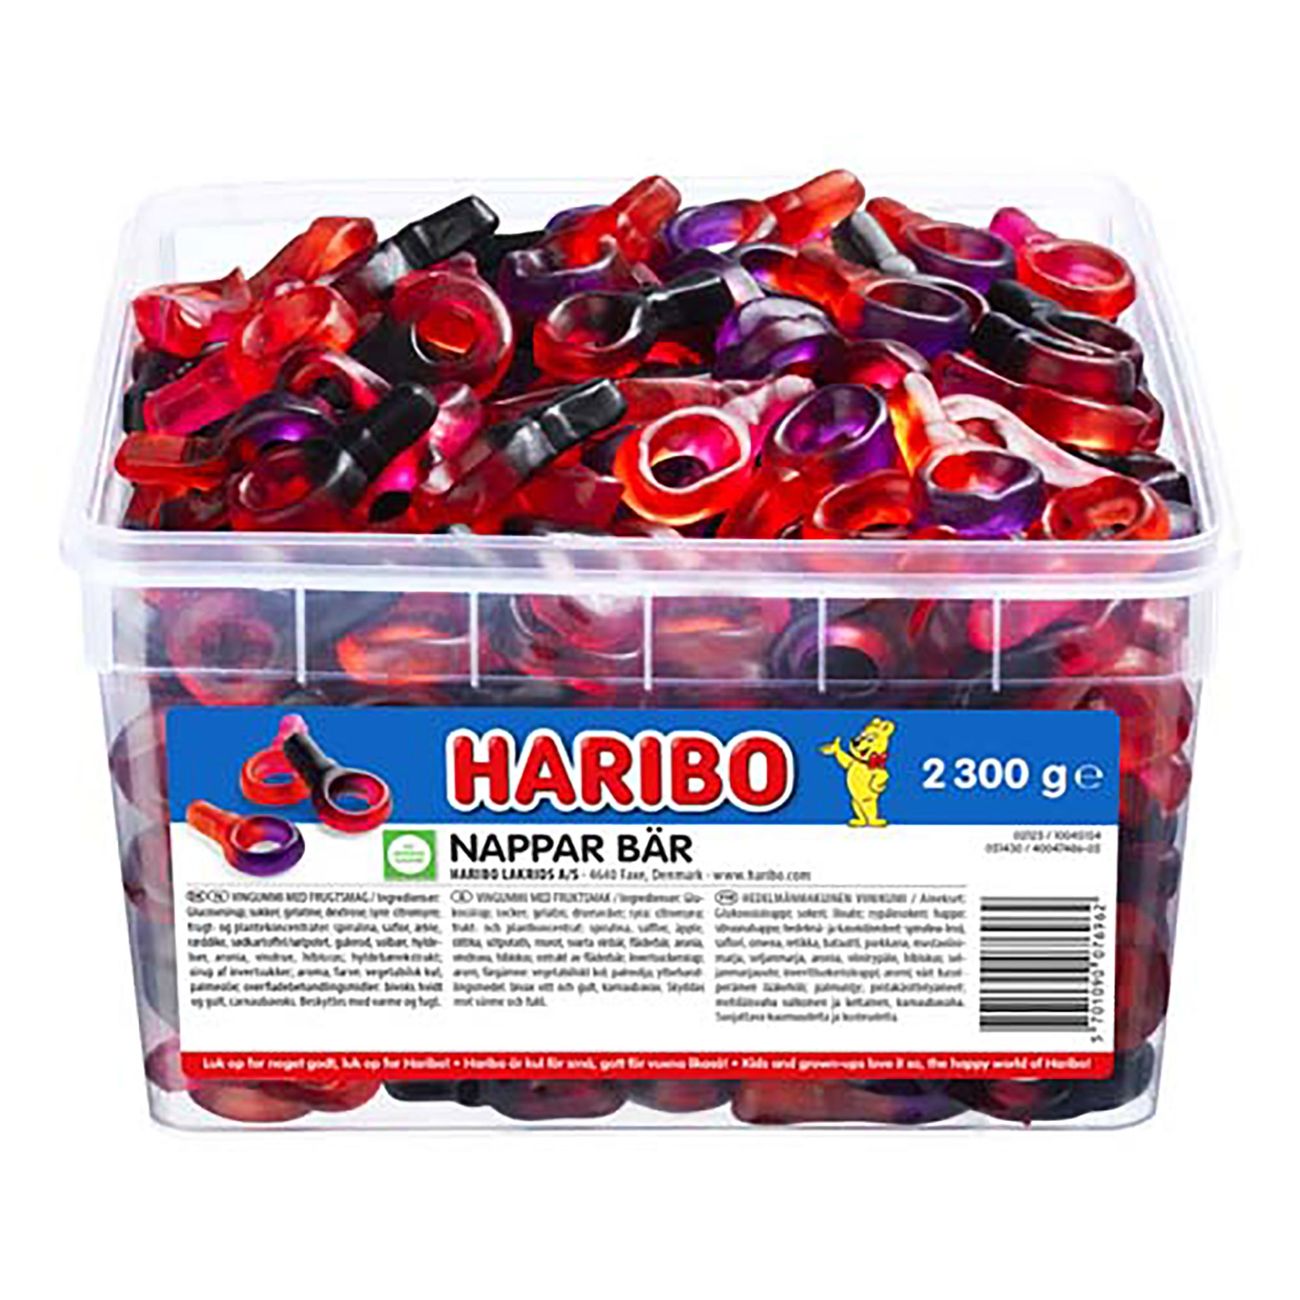 haribo-nappar-bar-85256-1